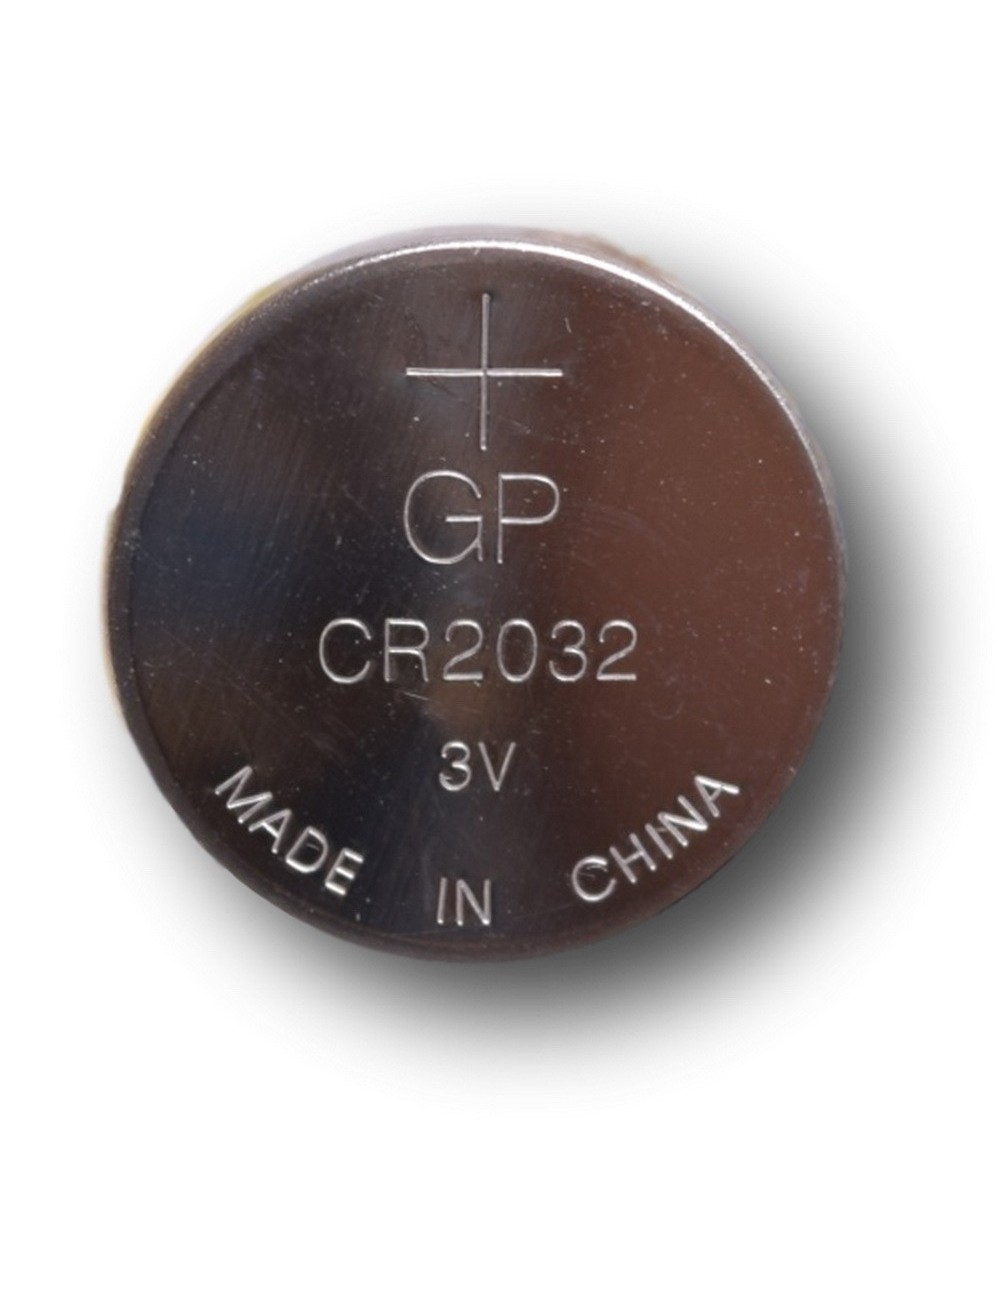 Lithium knoopcel CR2032 3V 220mAh (GP)